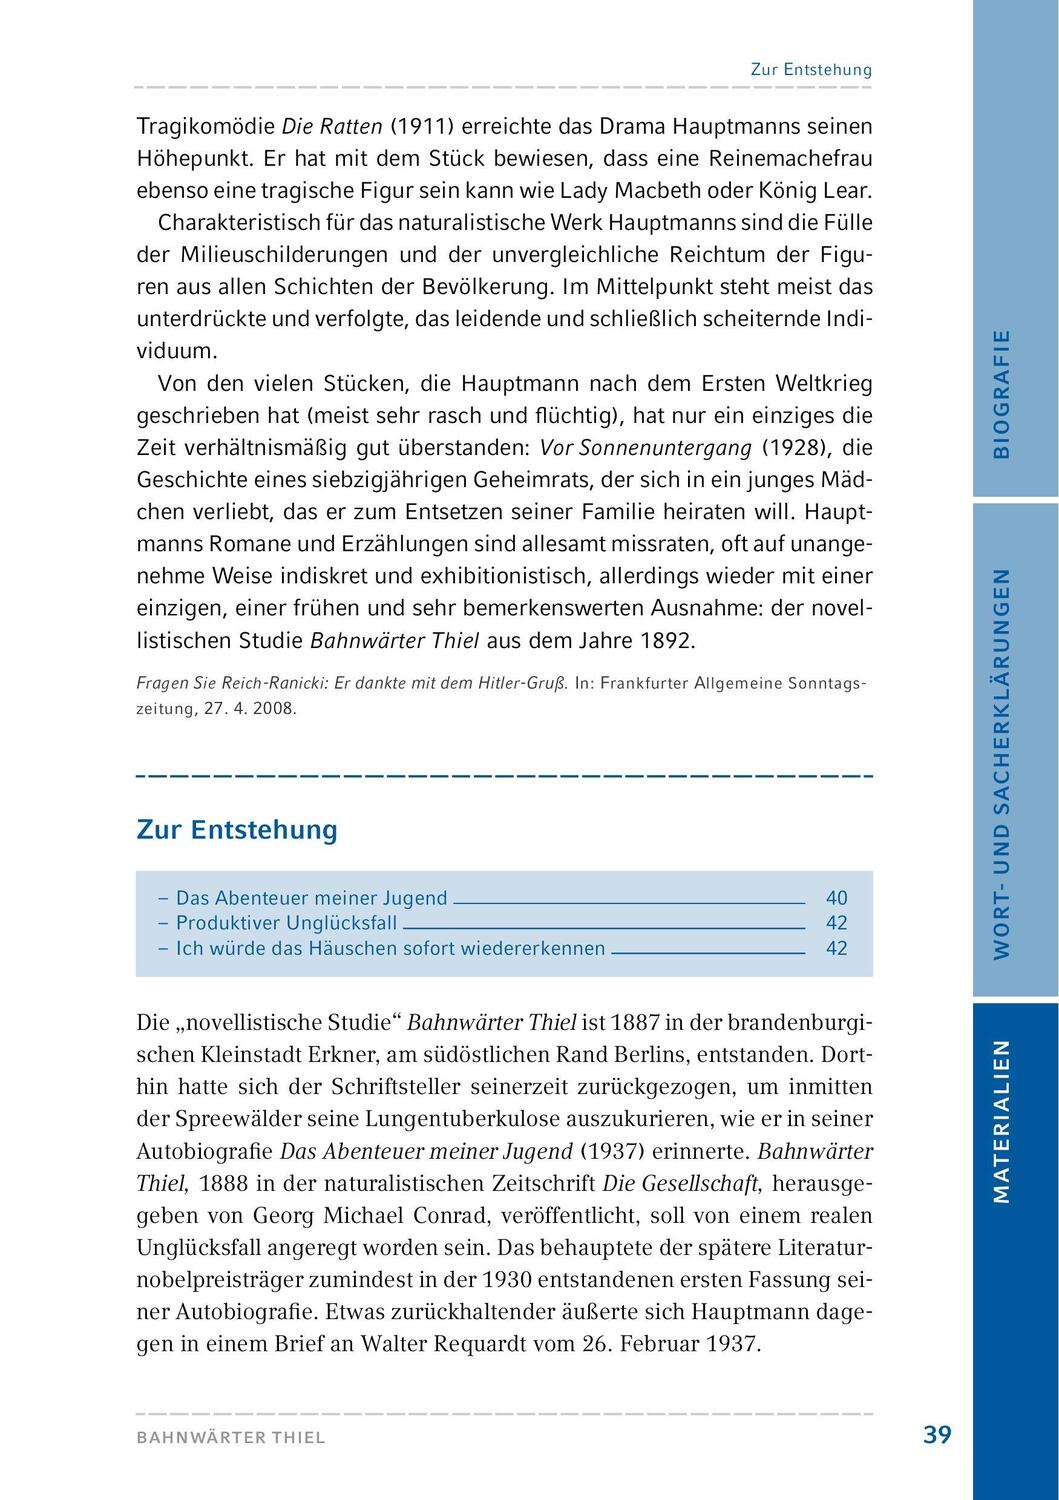 Bild: 9783804425750 | Bahnwärter Thiel | Hamburger Lesehefte + Königs Materialien | Buch